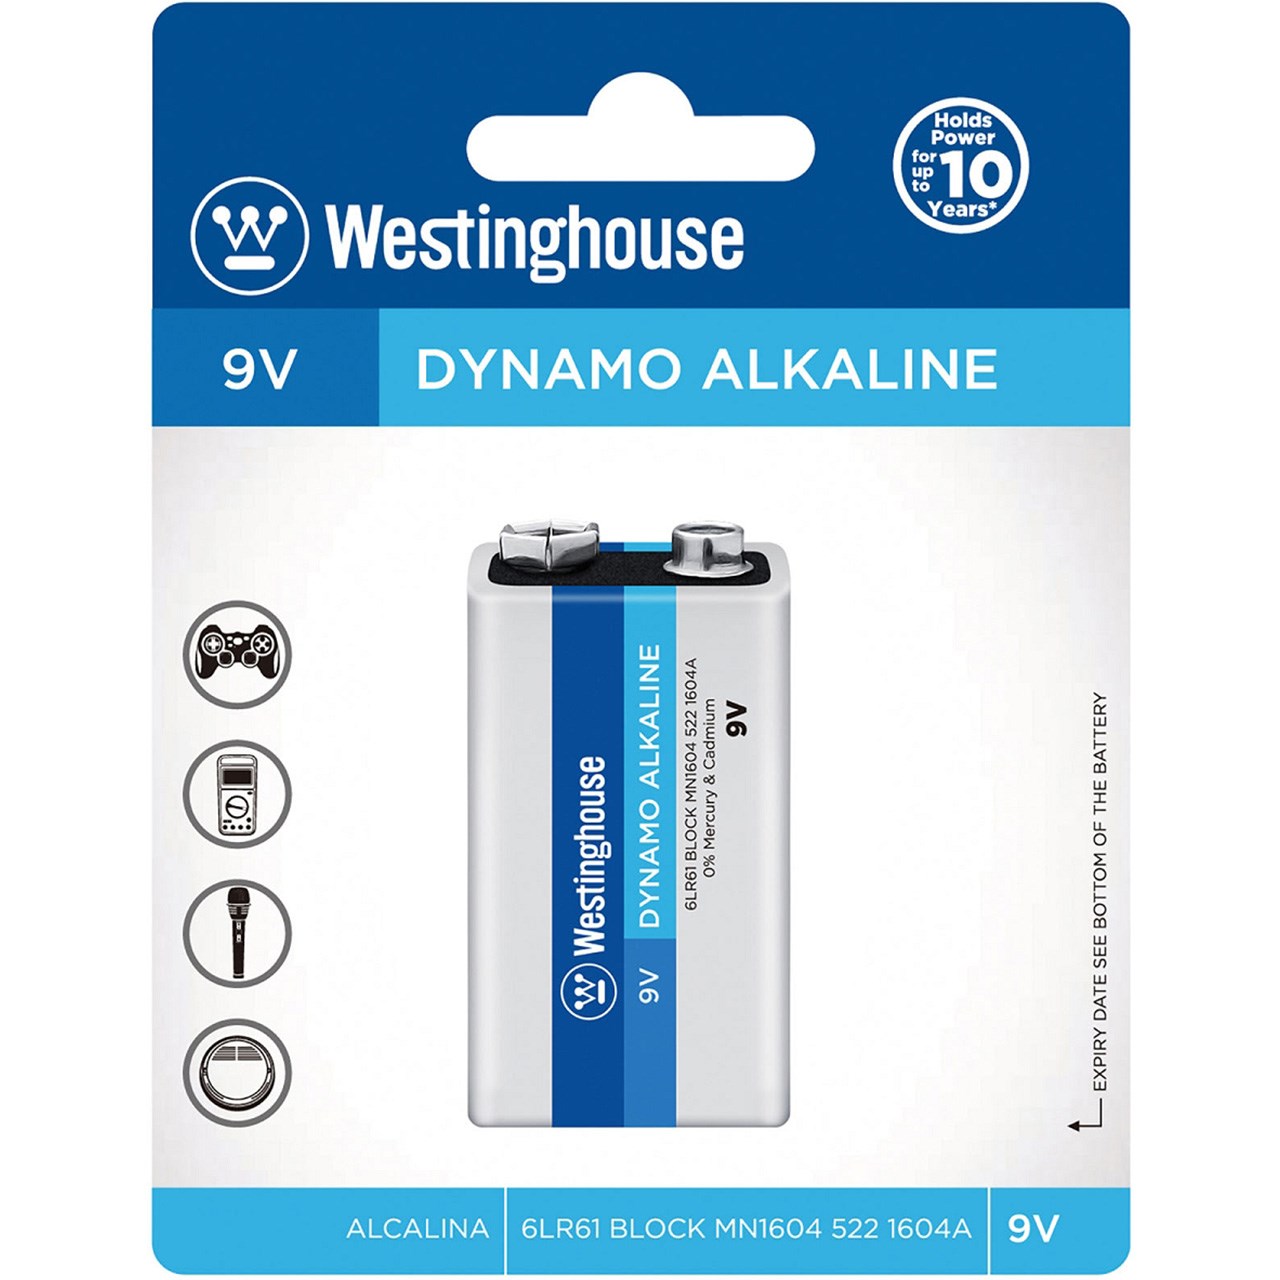 نقد و بررسی باتری کتابی وستینگ هاوس مدل Dynamo Alkaline توسط خریداران